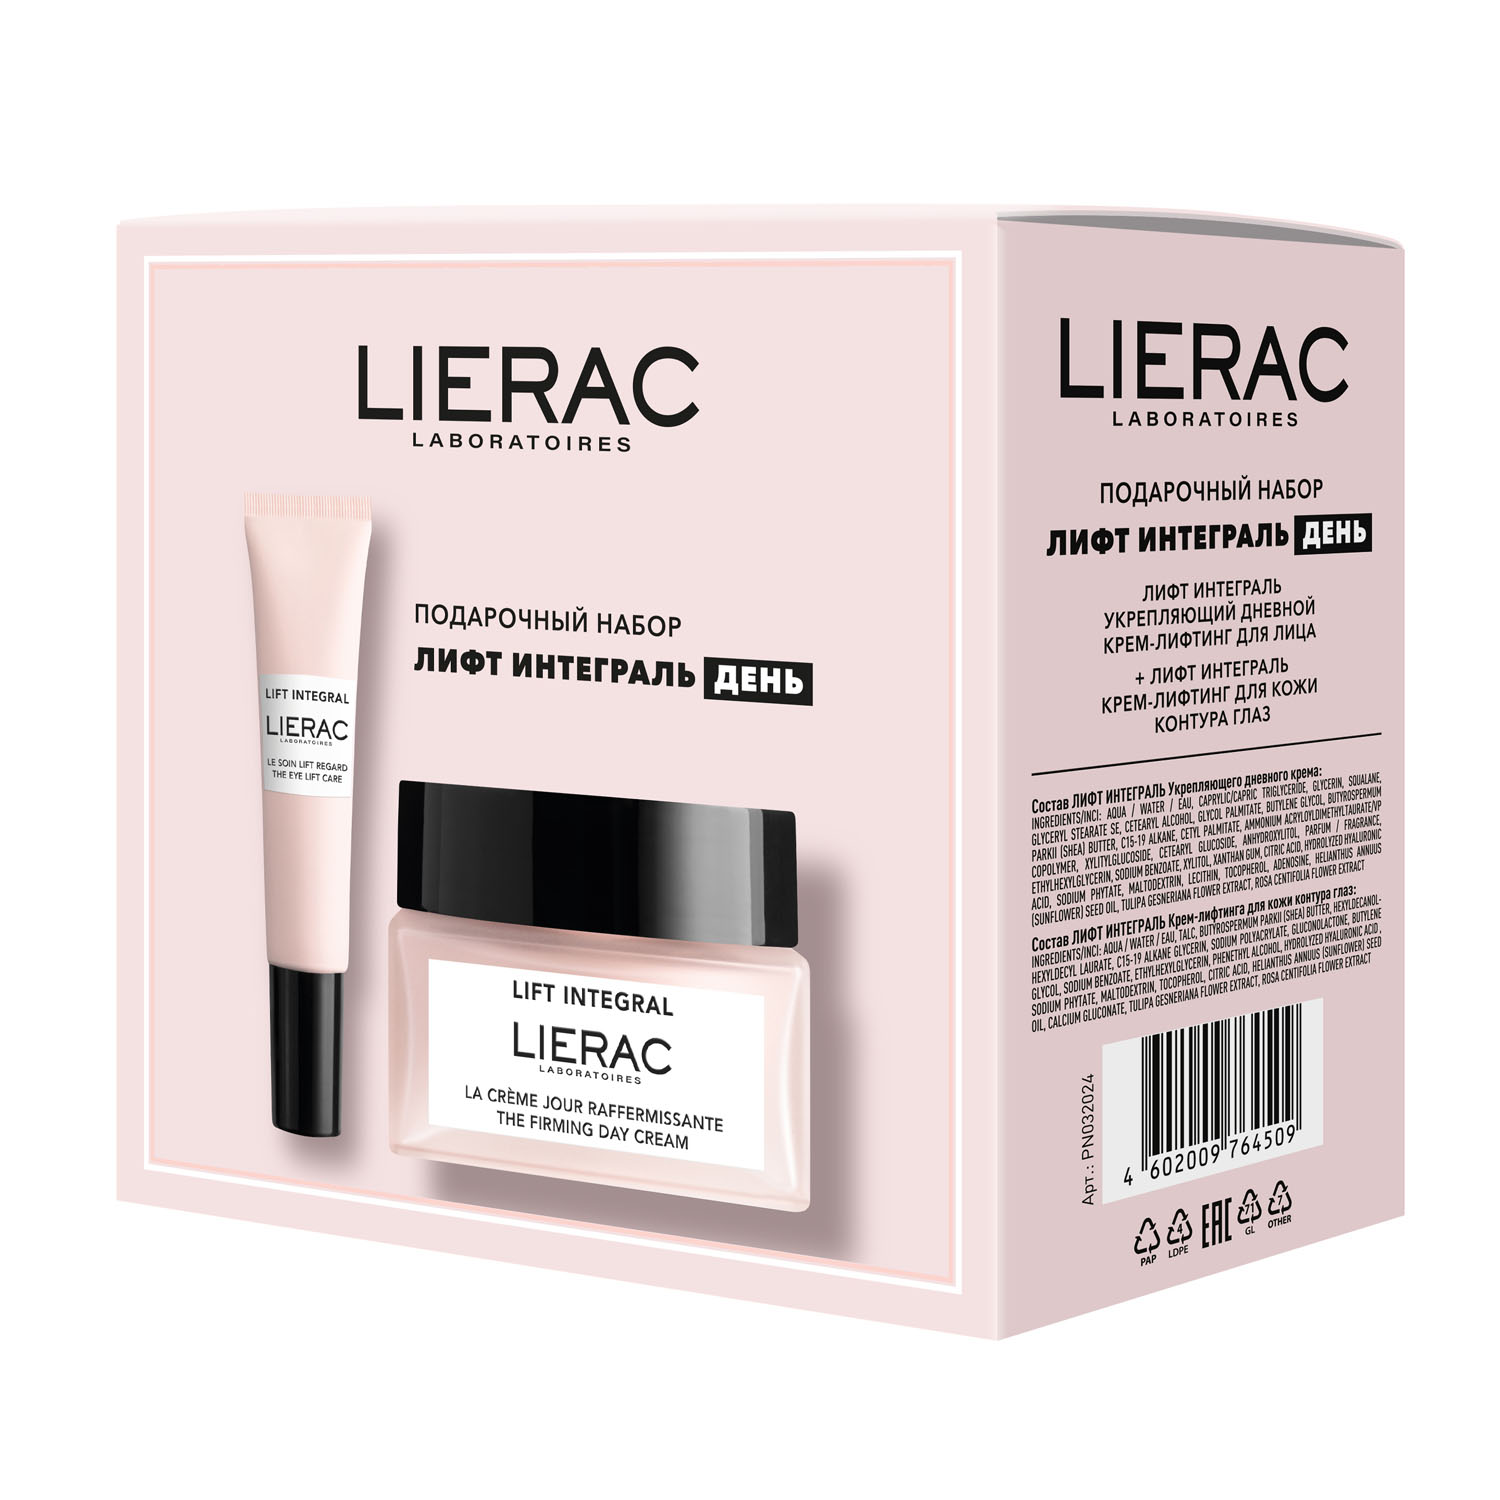 Lierac Подарочный набор: дневной крем-лифтинг для лица 50 мл + крем-лифтинг для кожи контура глаз 15 мл (Lierac, Lift Integral)